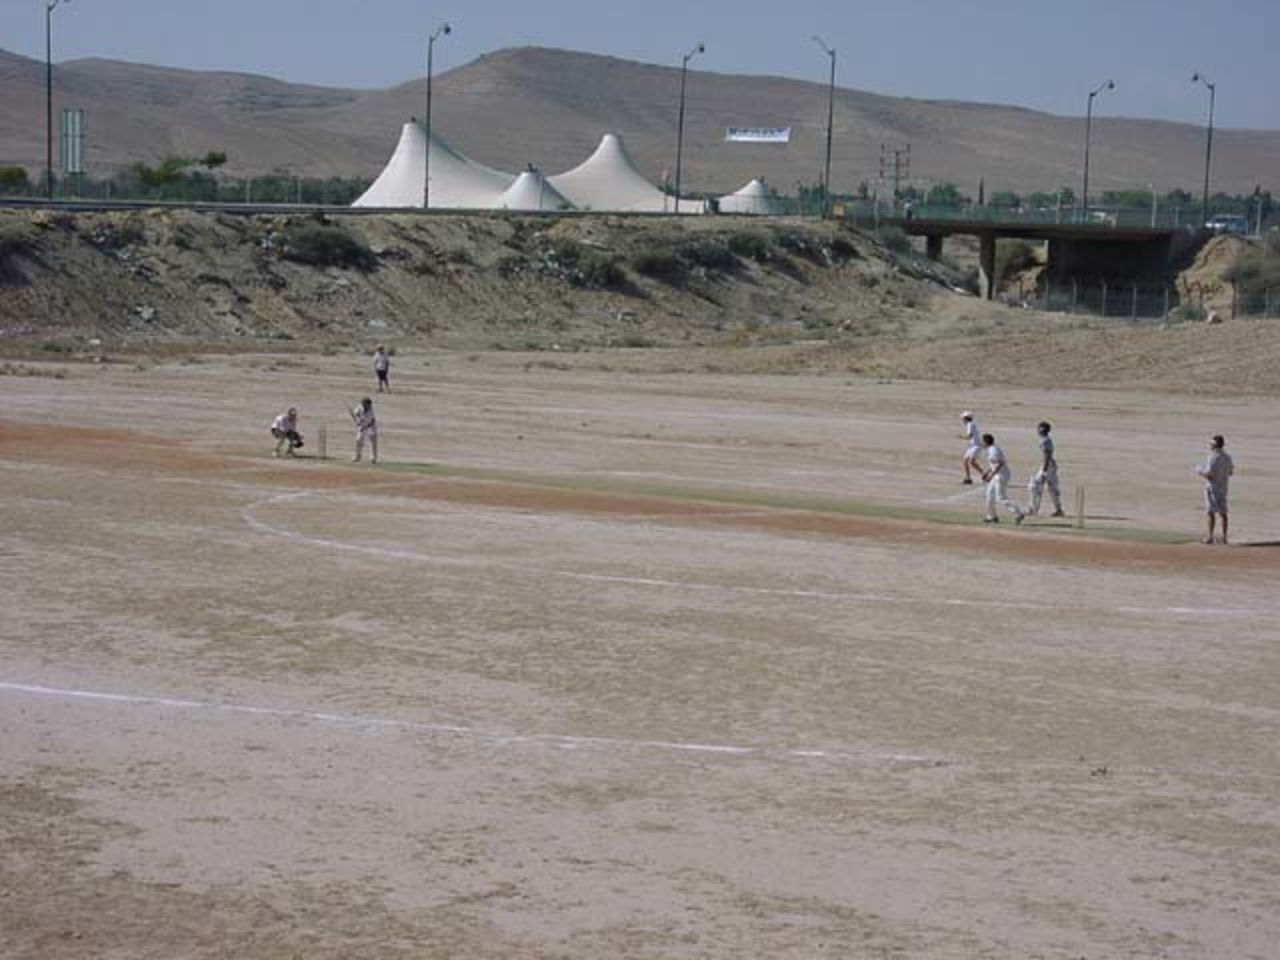 A junior match underway in Dimona